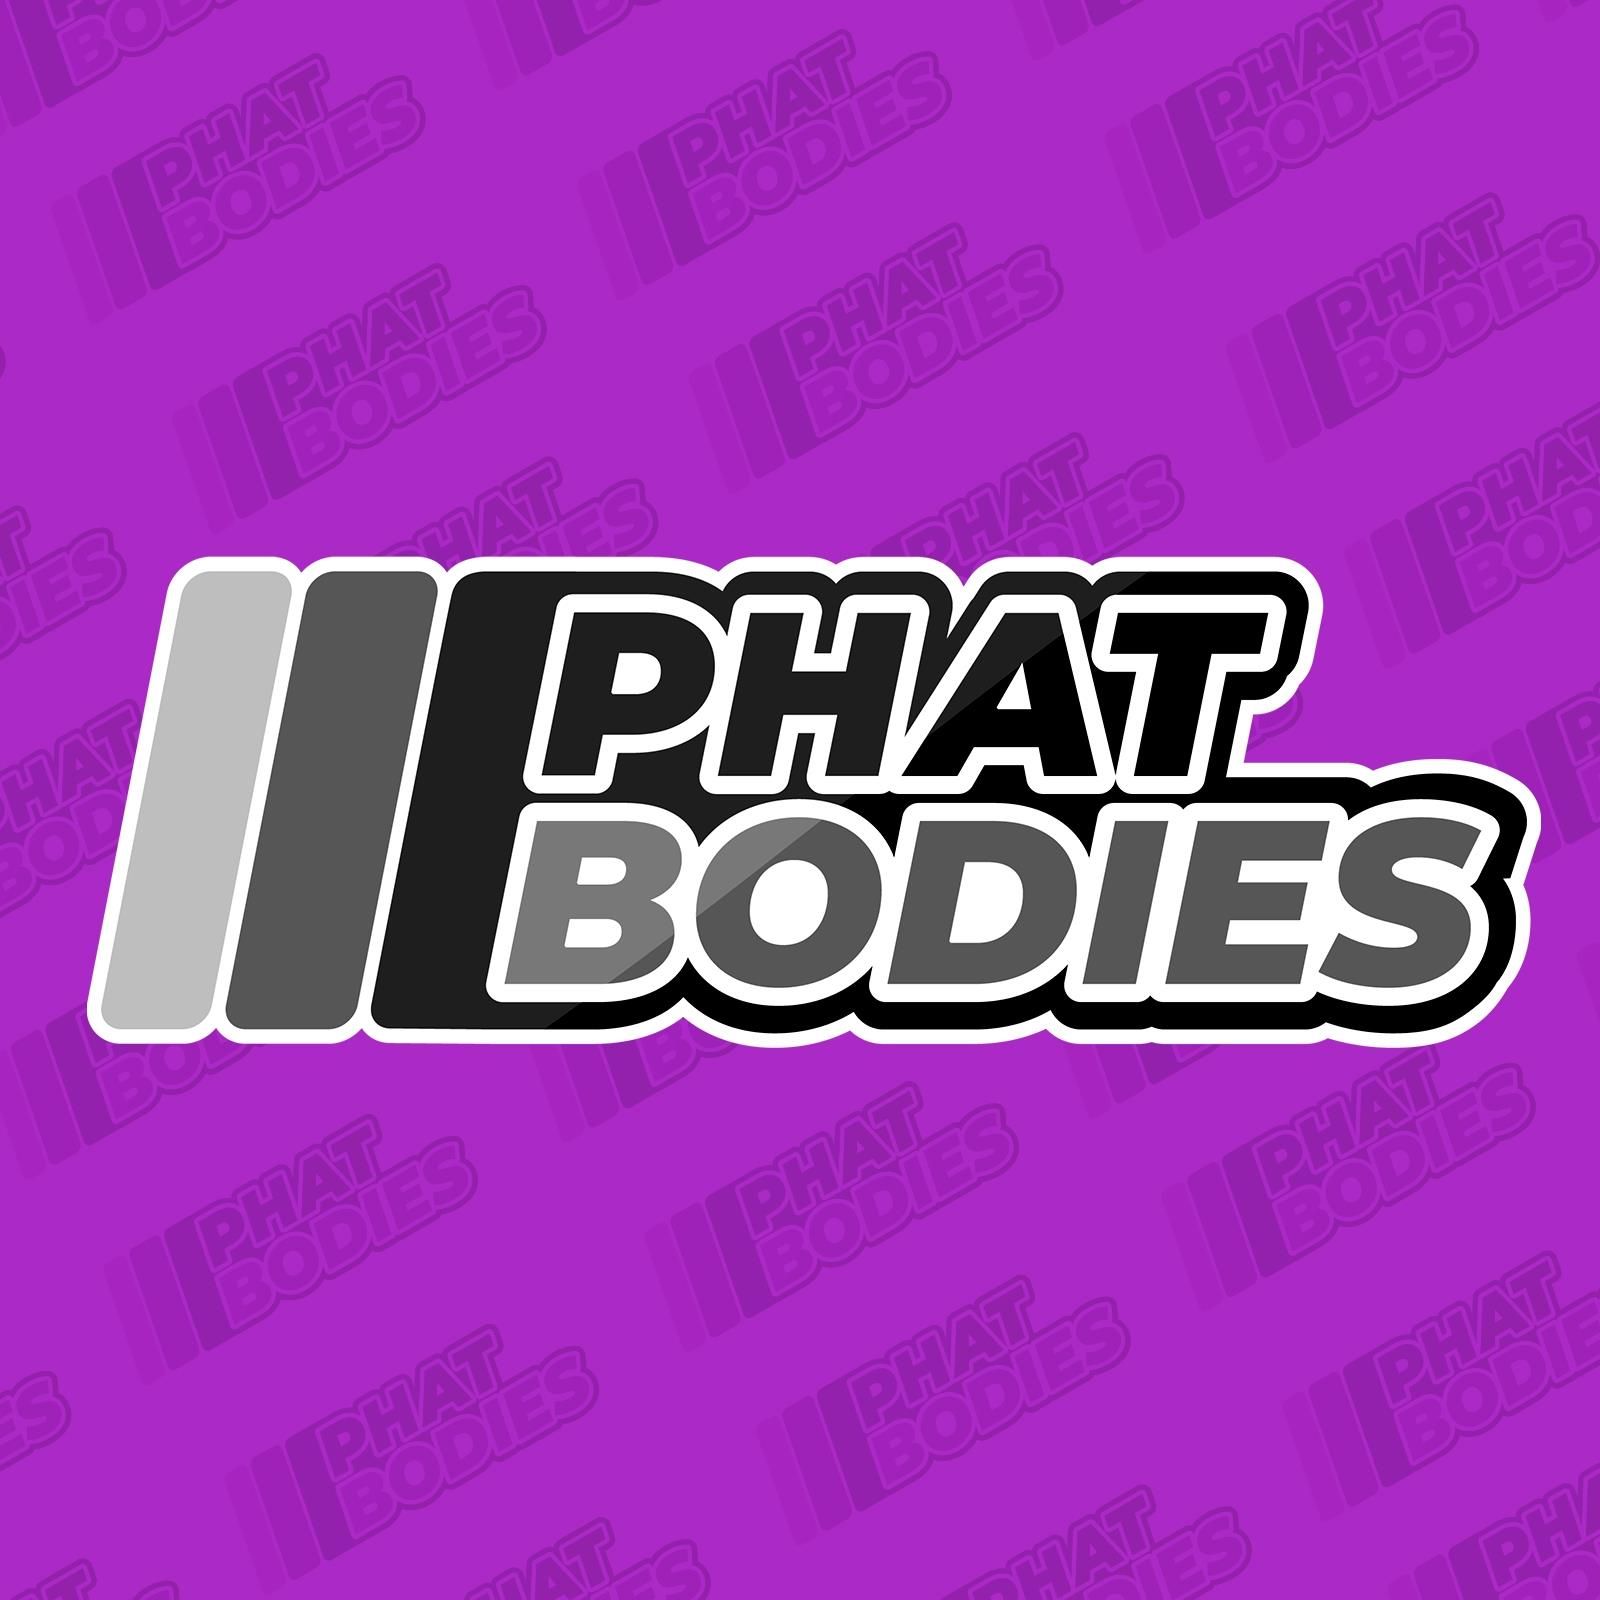 Phat Bodies